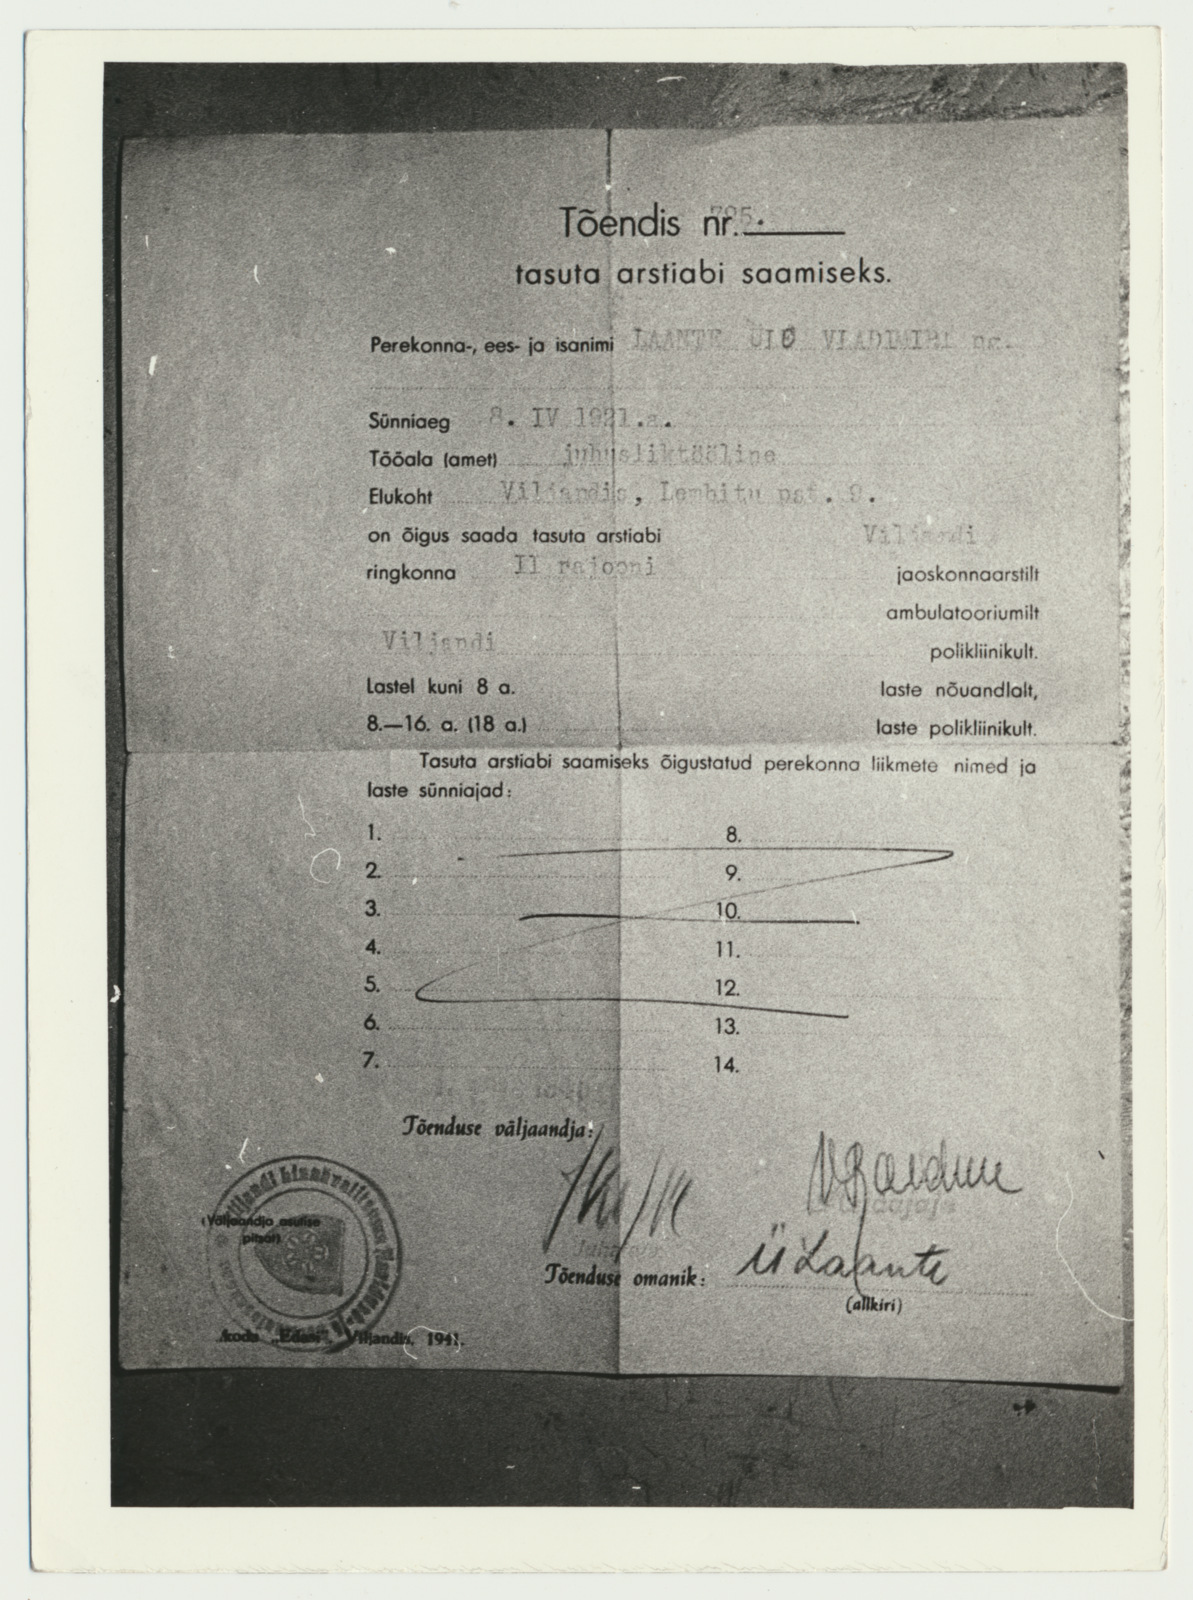 fotokoopia, tõendis tasuta arstiabi saamiseks, 1941